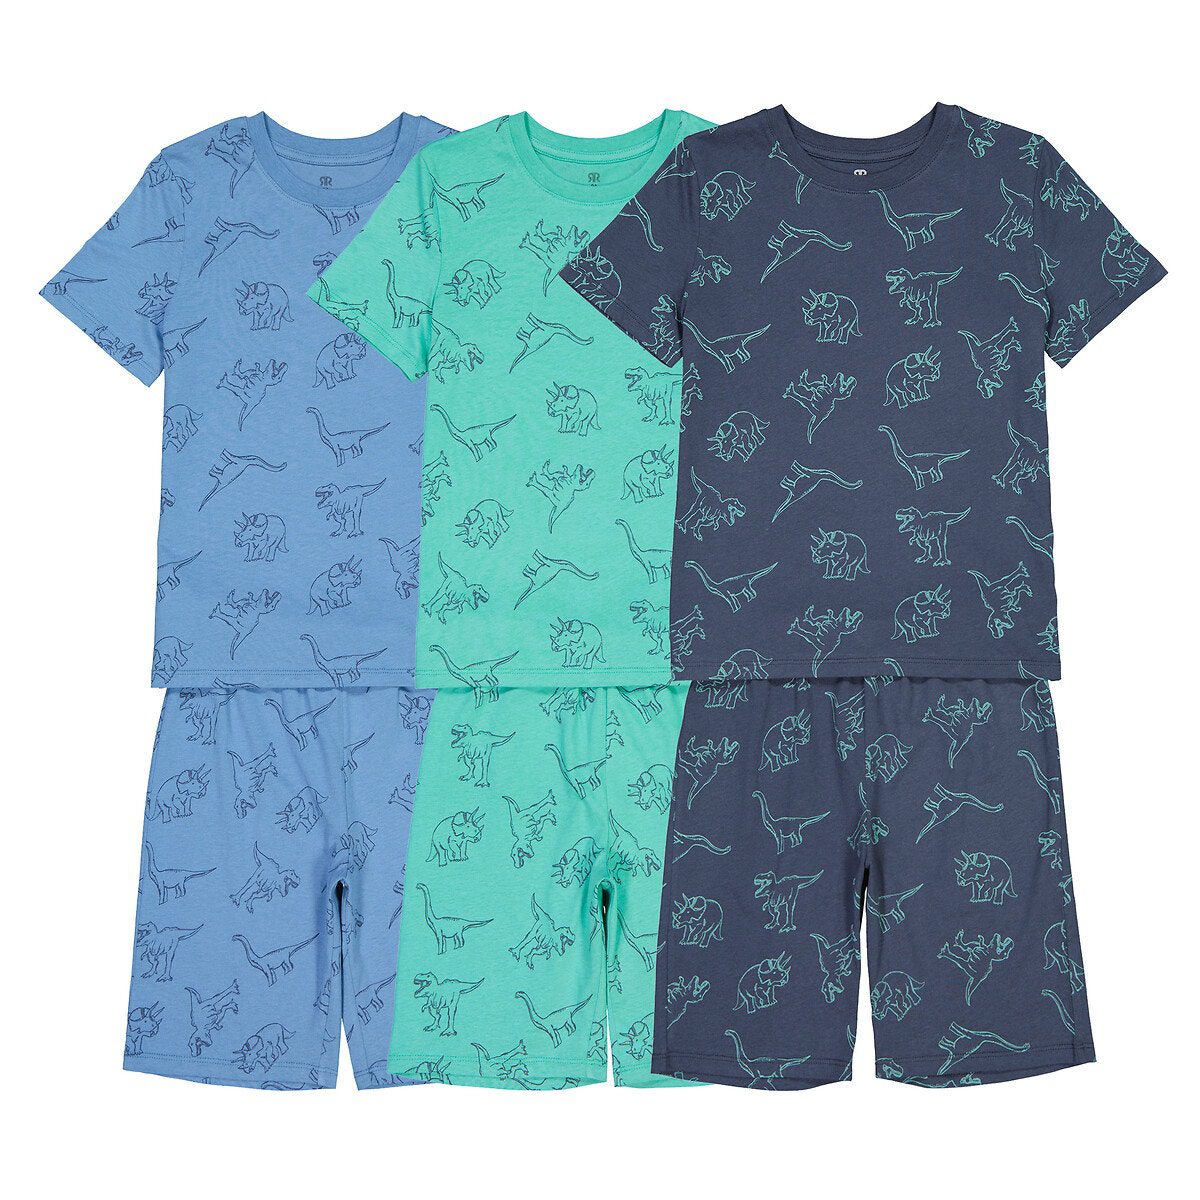 Σετ 3 πιτζάμες με σορτς και μοτίβο δεινόσαυρους Μπλε